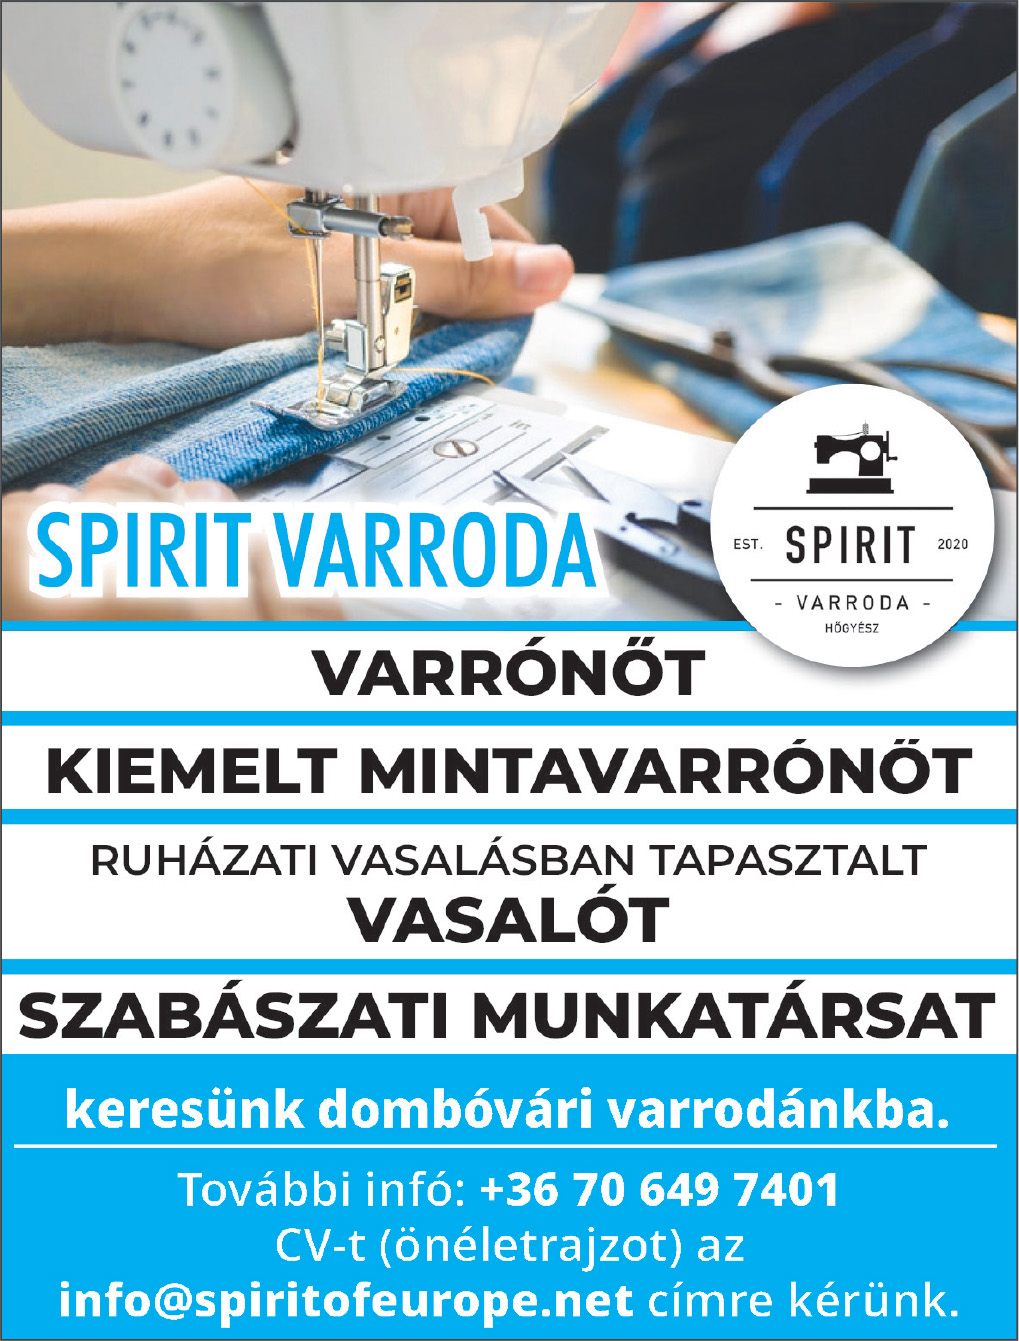 Spirit Varodda